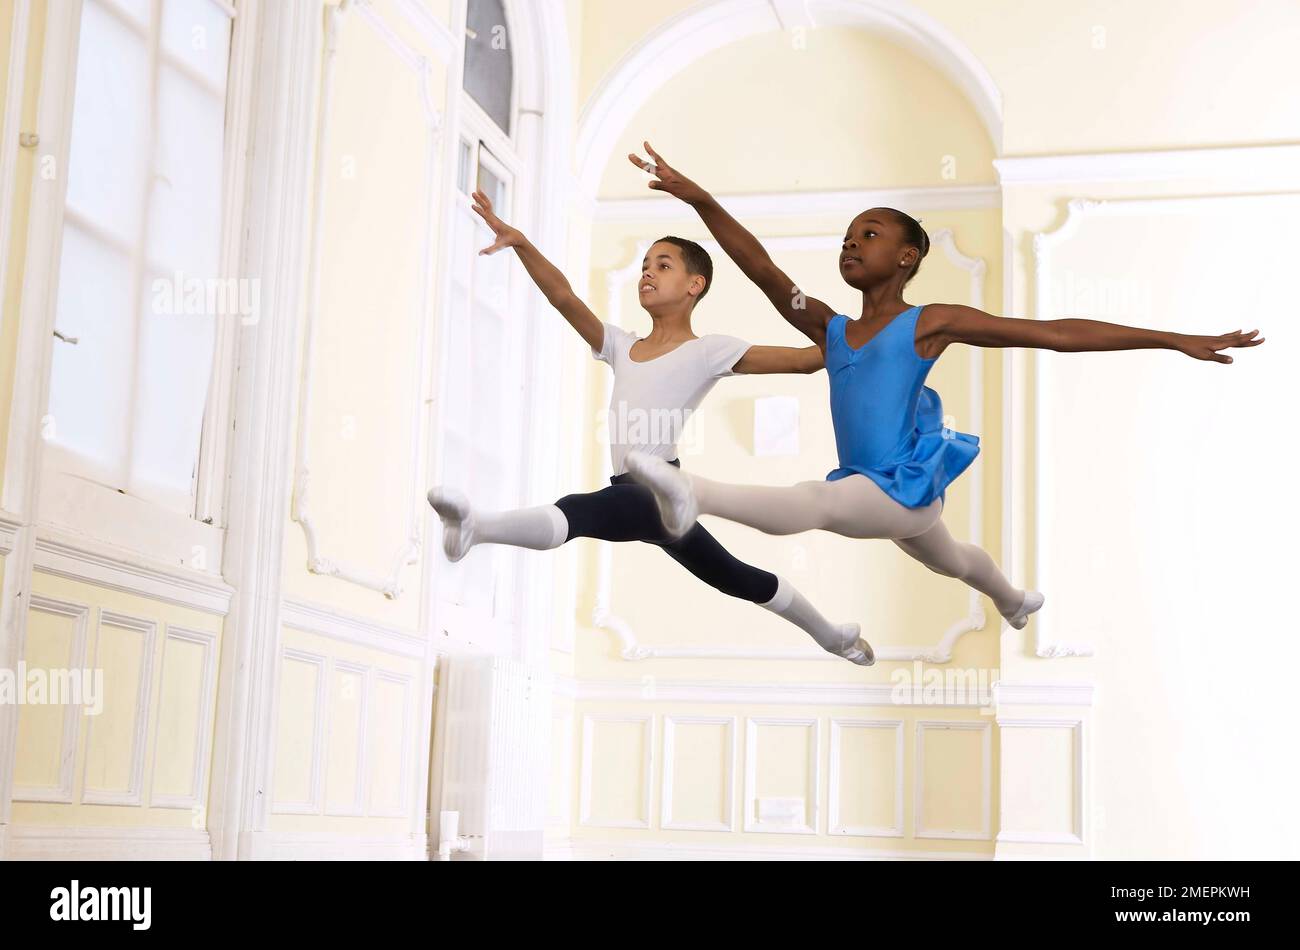 Junge und Mädchen Ballett Tänzerinnen eine Grand jete springen Schritt Stockfoto